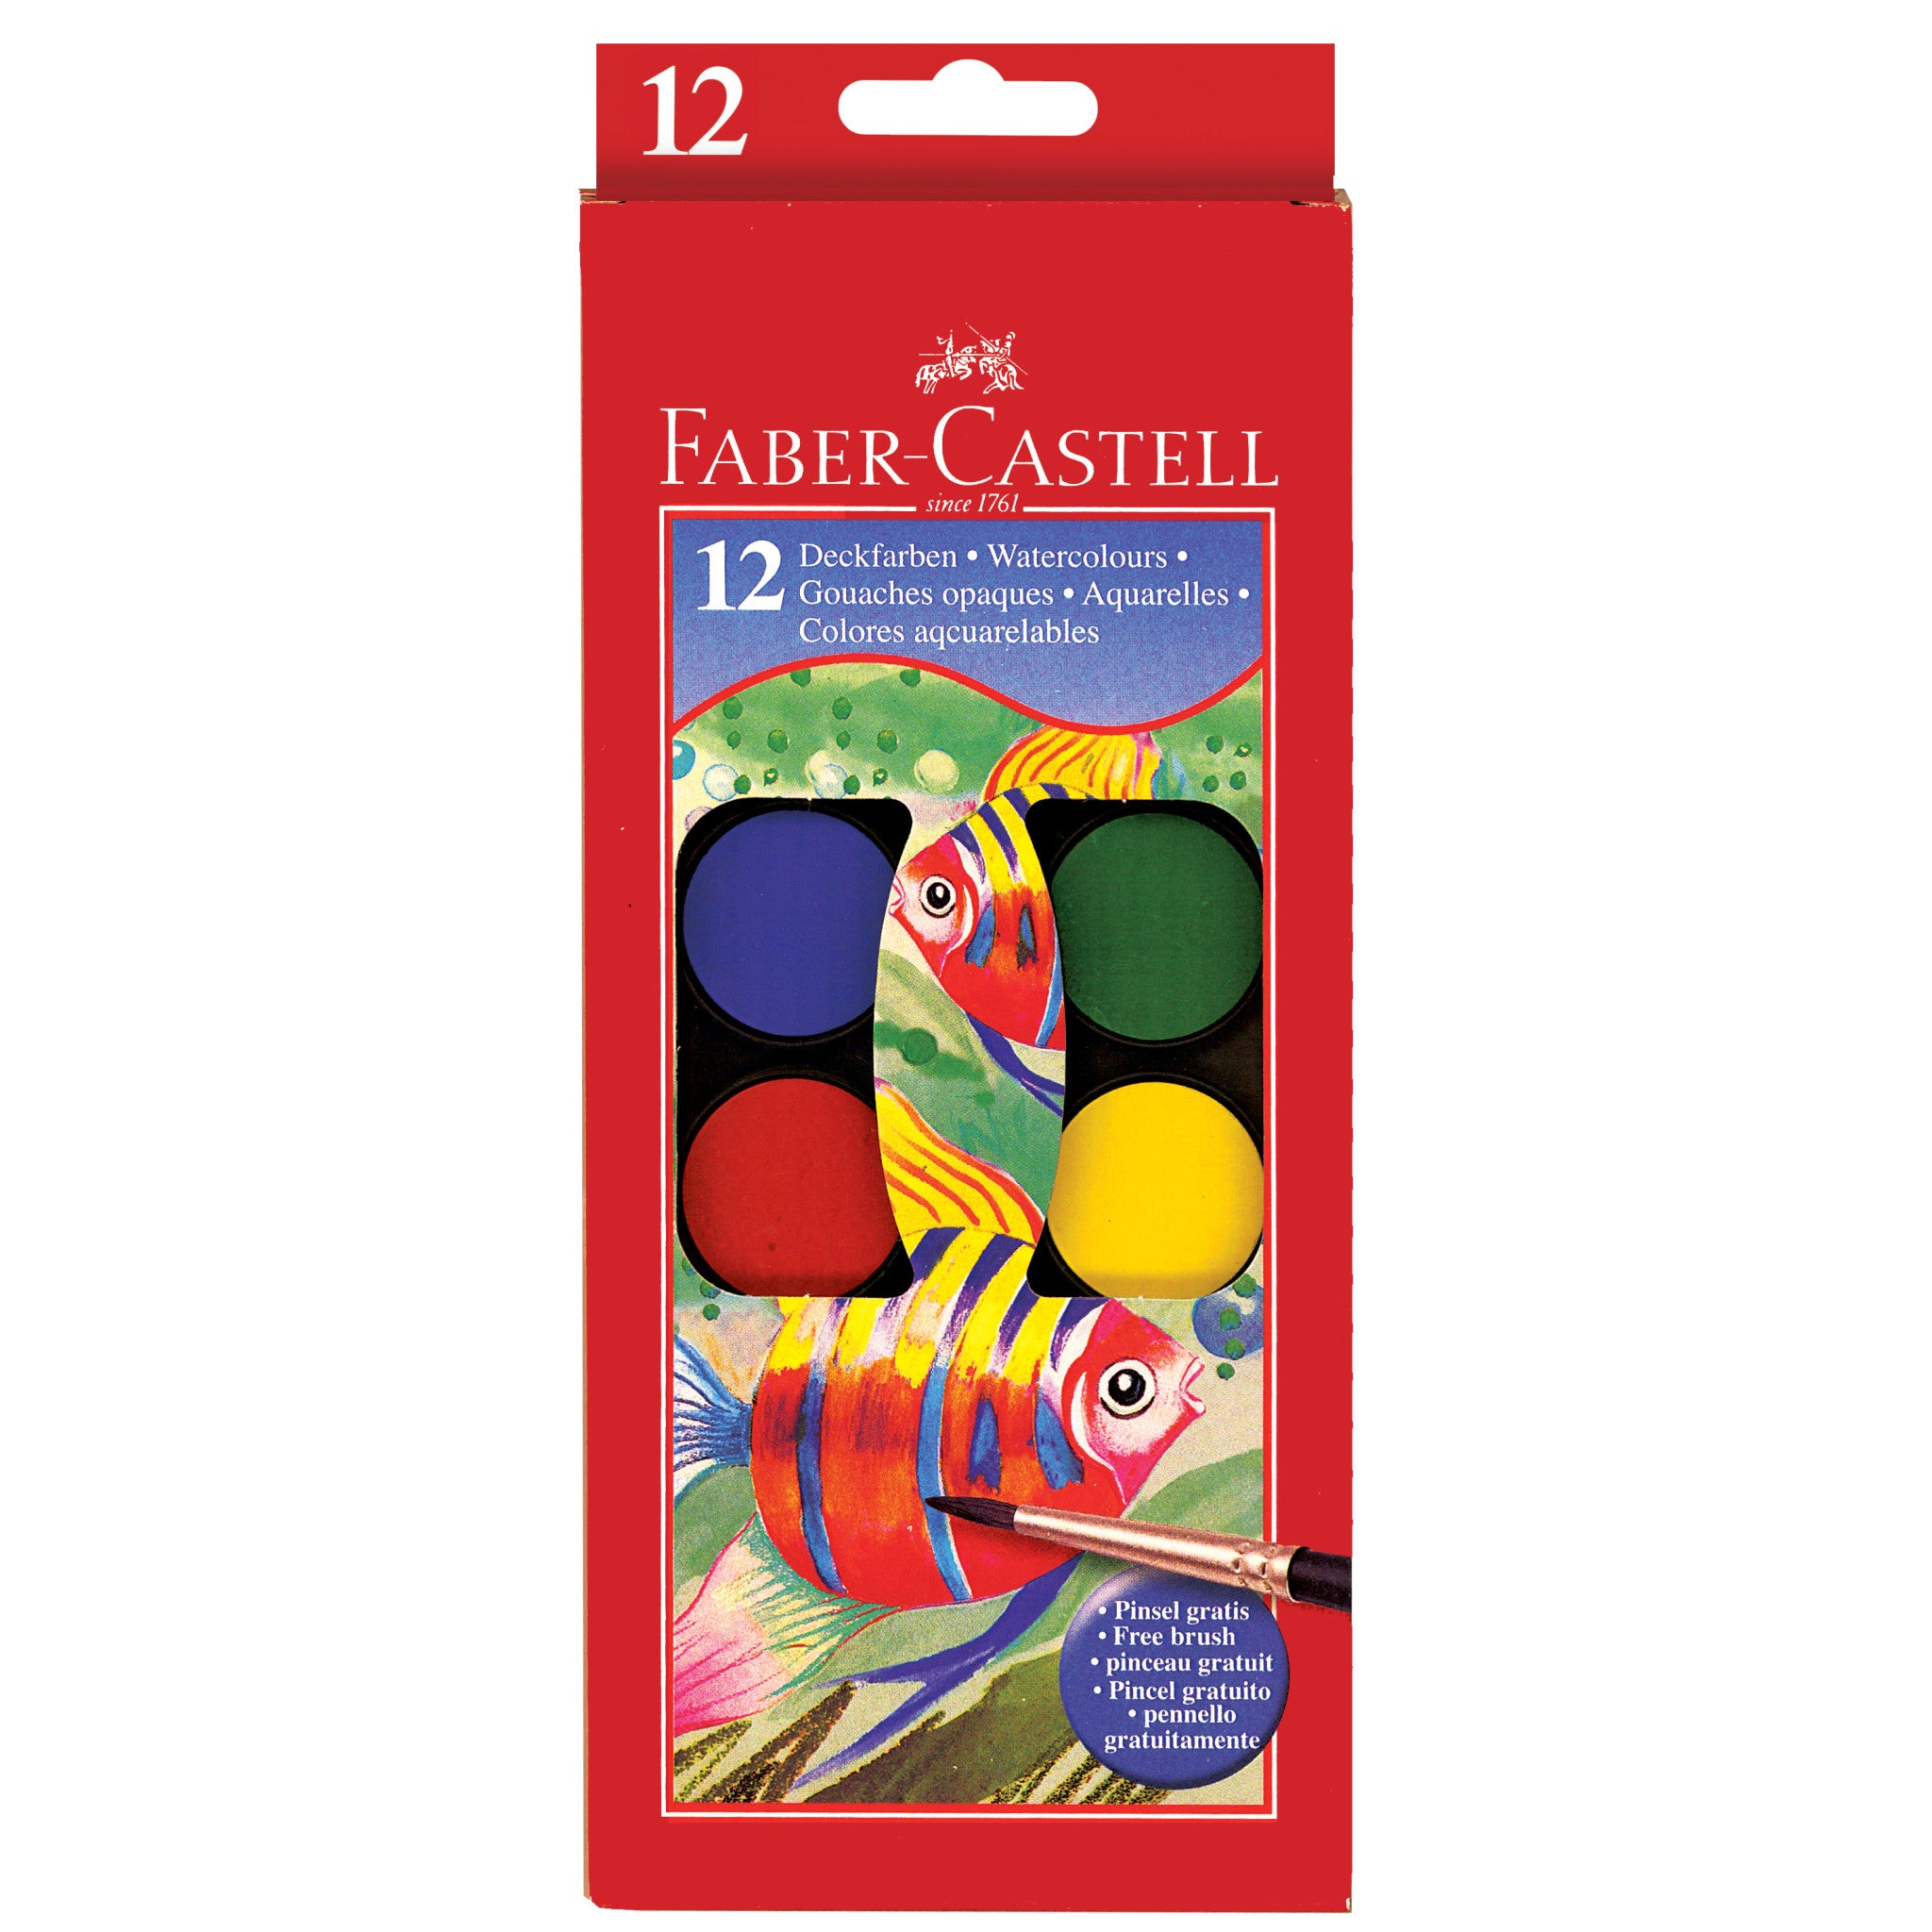 12 Pcs Mini Acrylic Paint Set,Washable Filled Paint Sets for Kids & Adults,Mini Paint Set with 8 Vivid Colors & Paint Brushes,Kids Paint Bulk Set